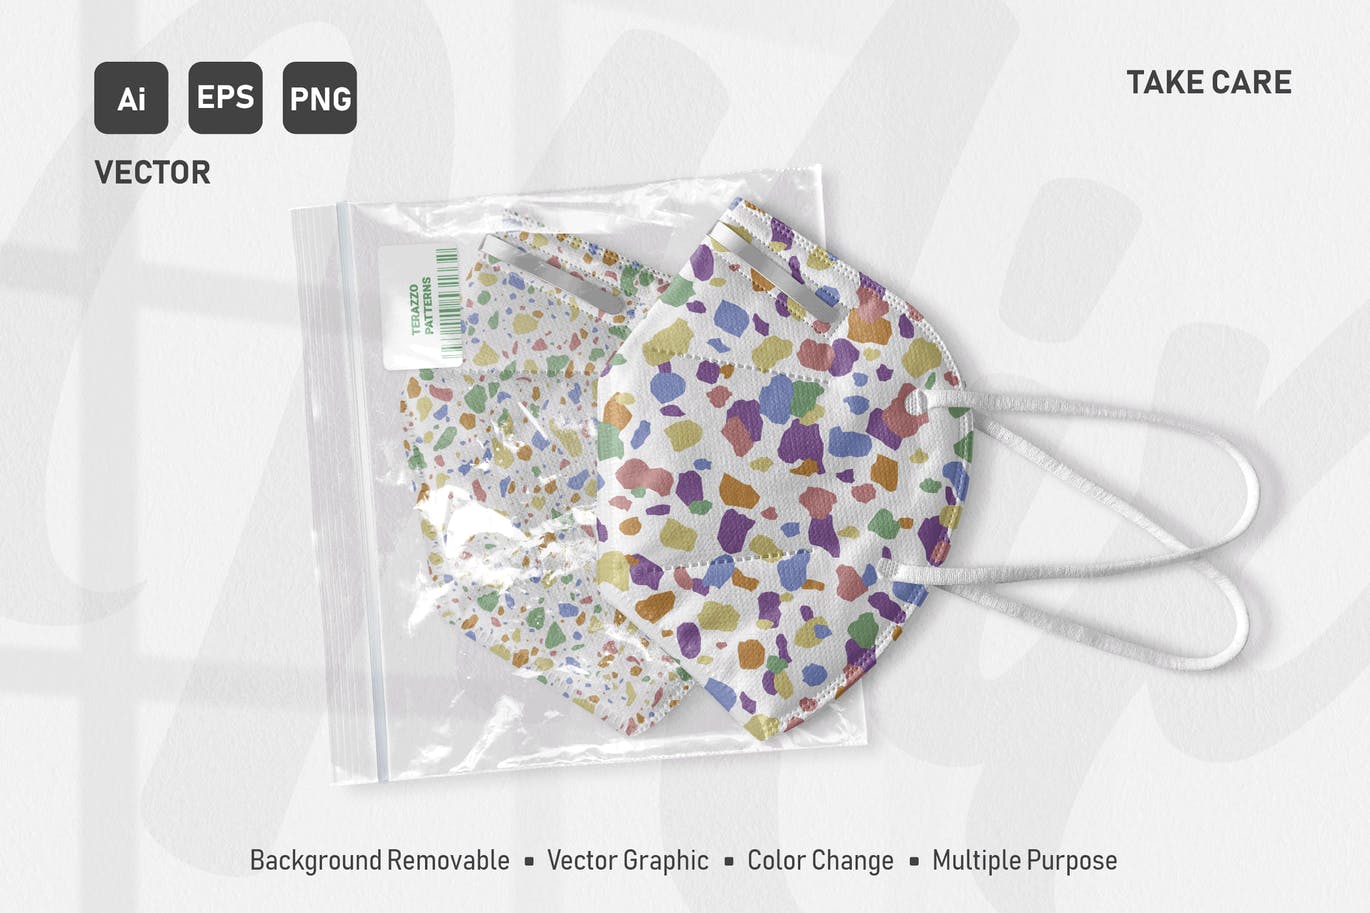 水磨石混合颜色无缝图案背景素材 Seamless Italian Terrazzo – Color Mix Pack设计素材模板